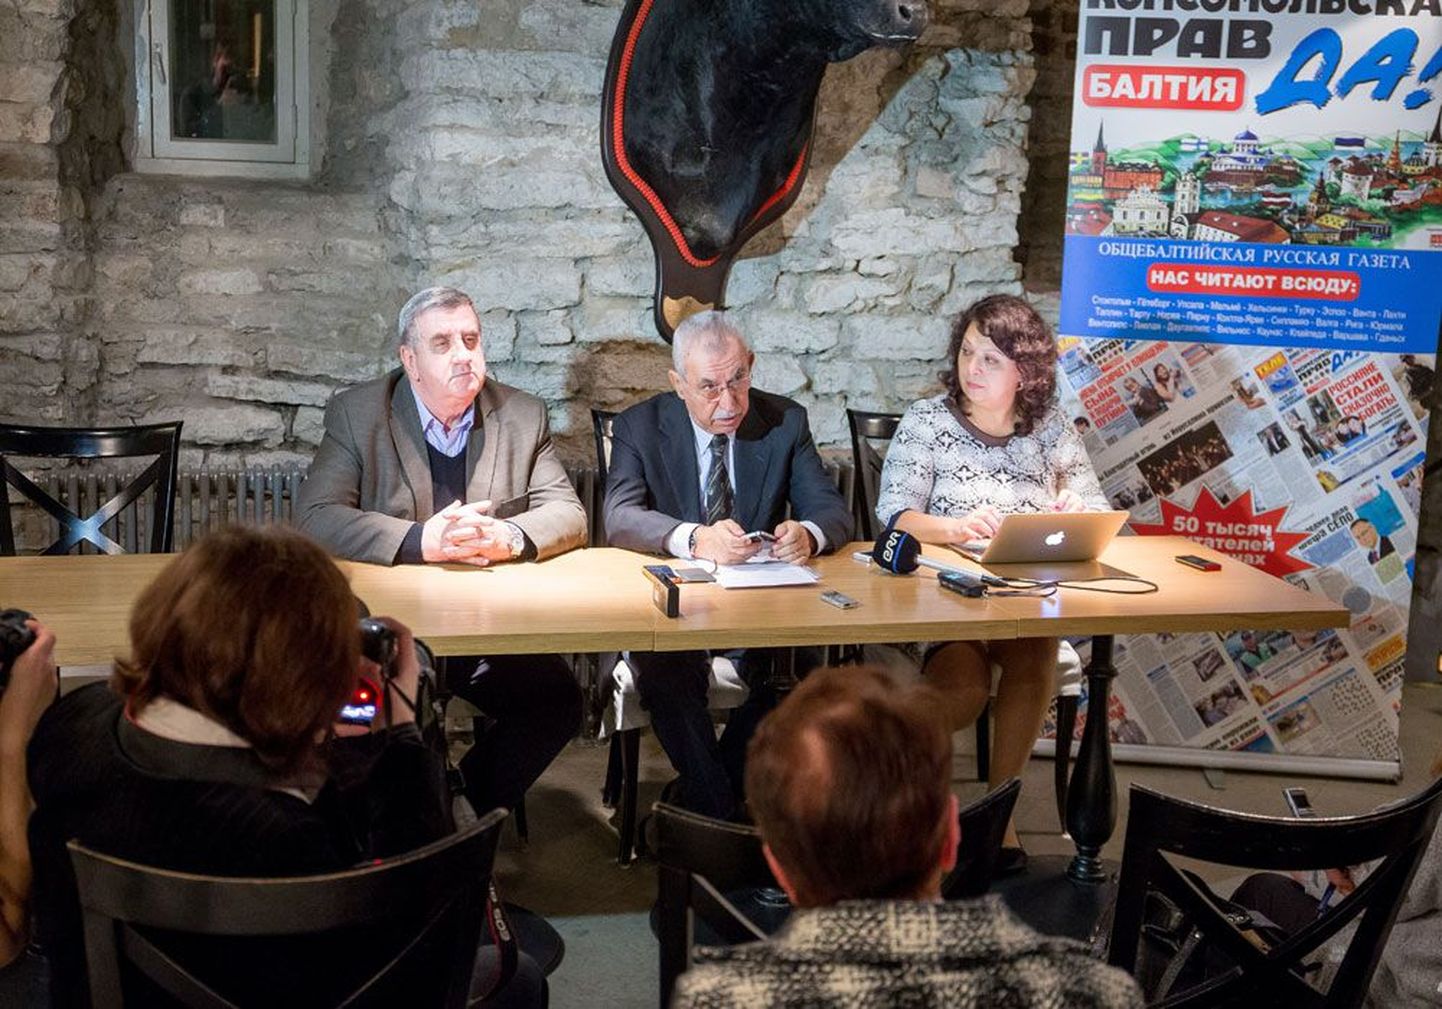 Джульетто Кьеза вместе с представителями медиаклуба «Импрессум» Игорем Тетериным и Галиной Сапожниковой на пресс-конференции.